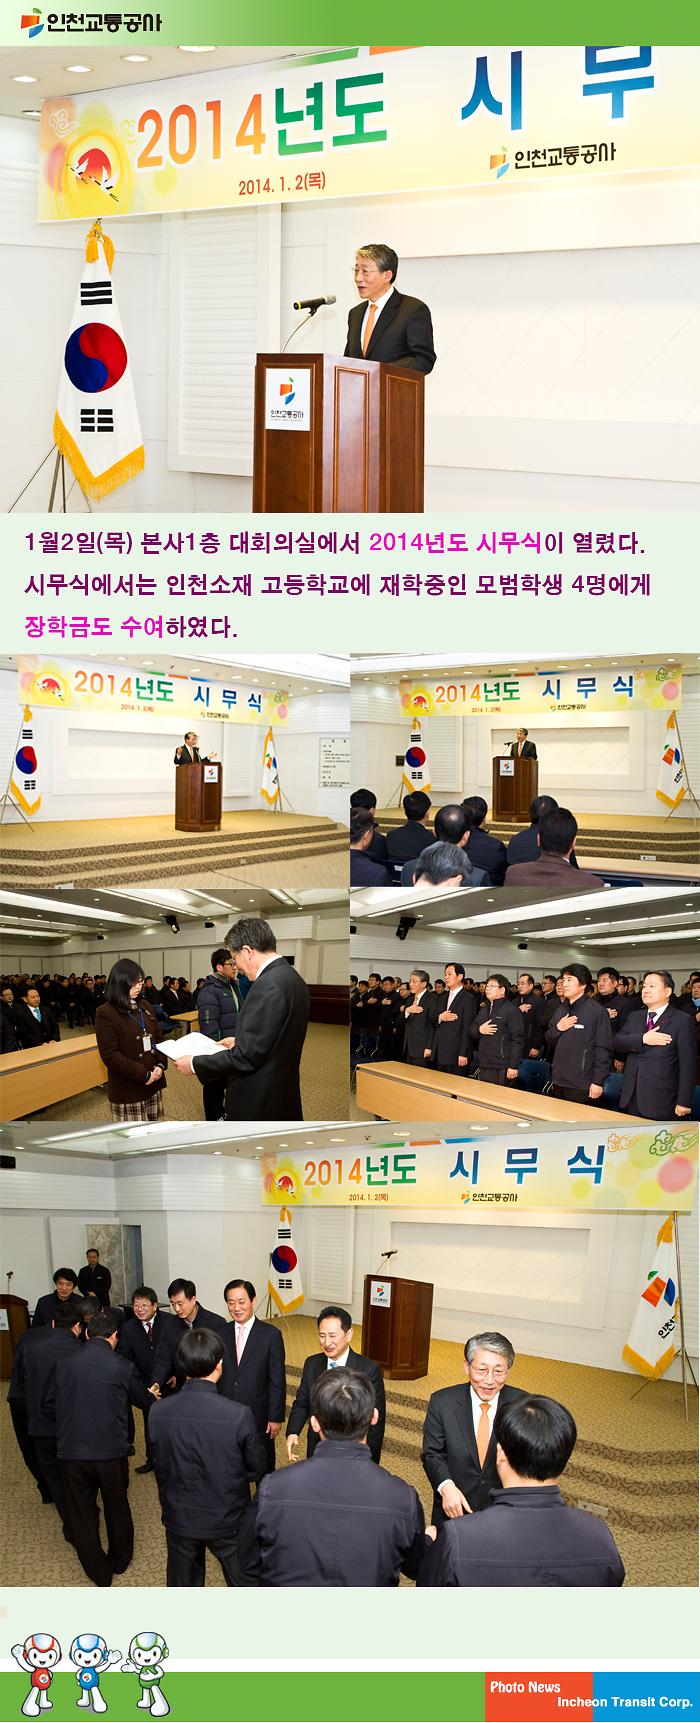 2014년도 시무식 개최 사진